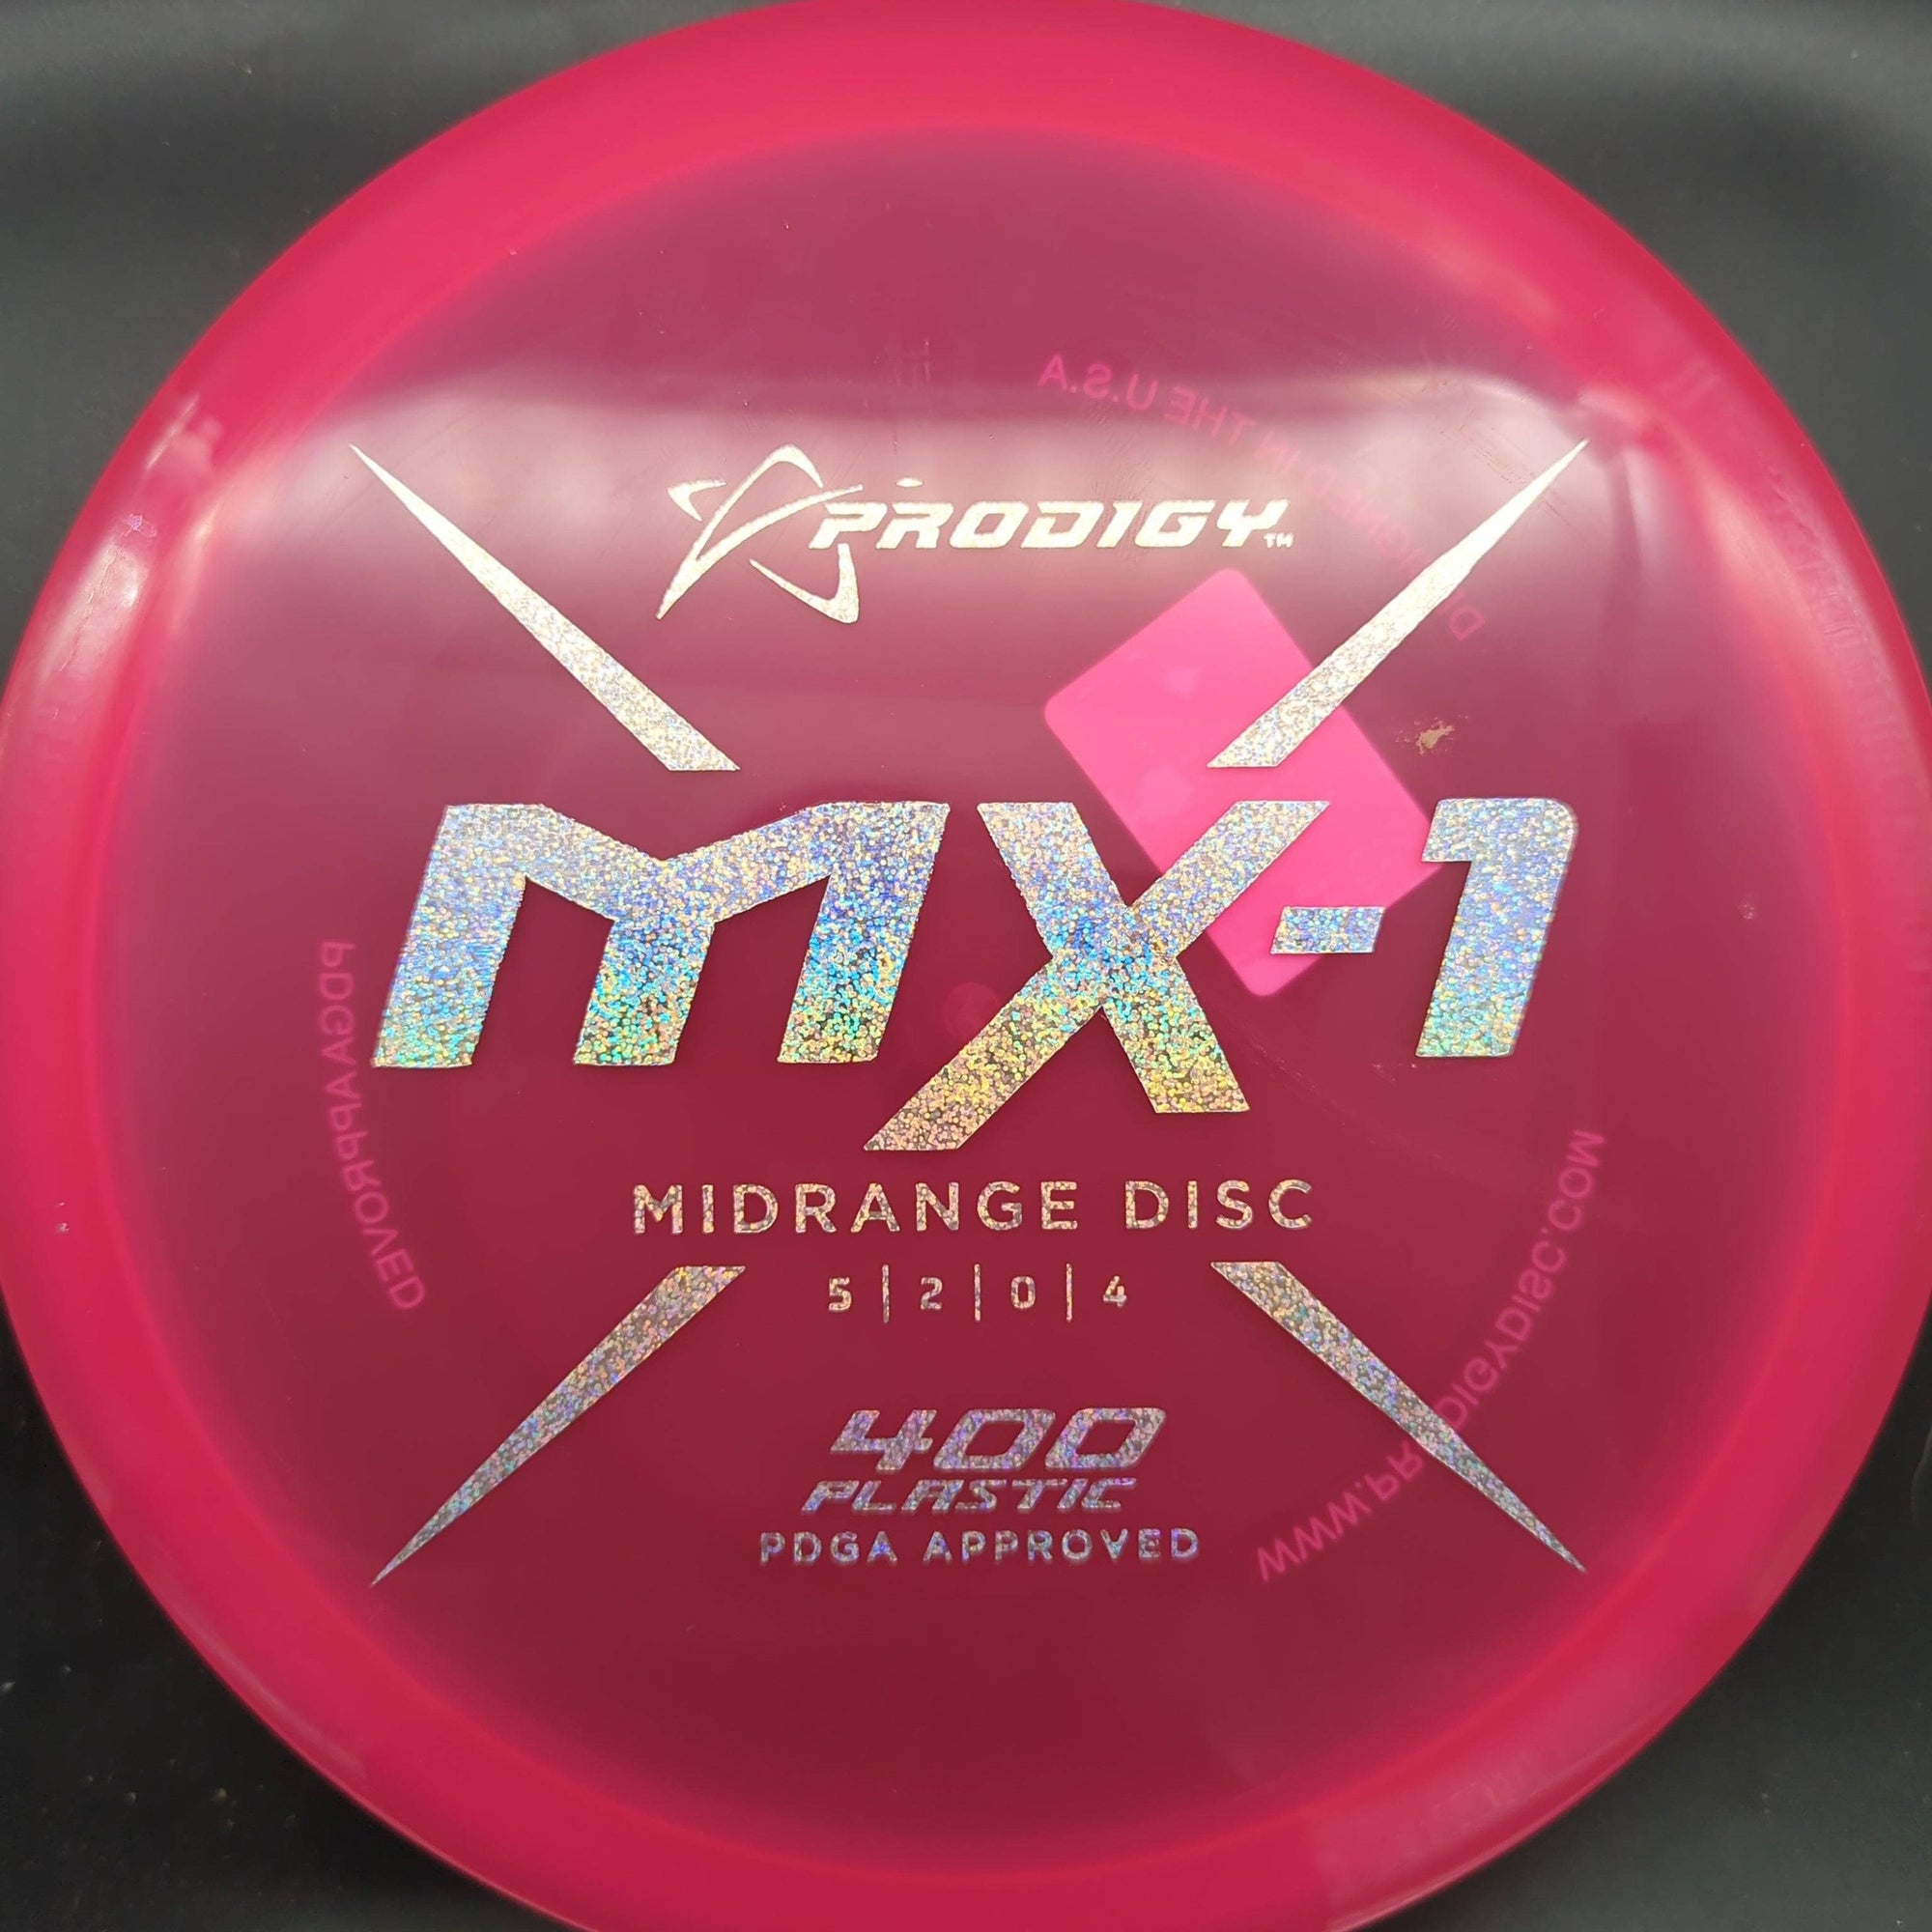 Prodigy Mid Range MX1, 400 Plastic